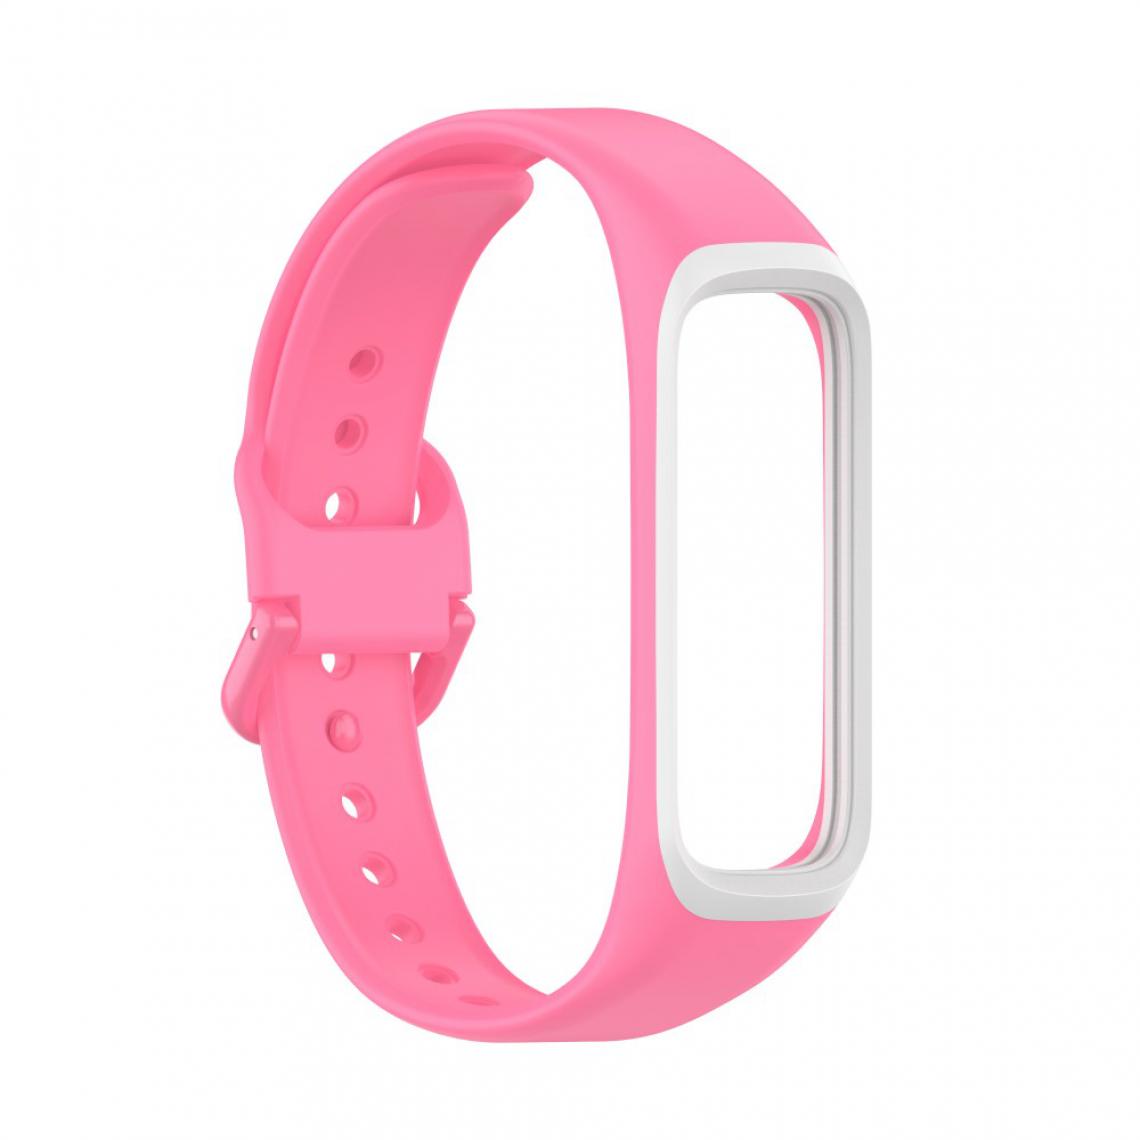 Other - Bracelet en silicone Bicolore rose/blanc pour votre Samsung Galaxy Fit 2/SM-R220 - Accessoires bracelet connecté